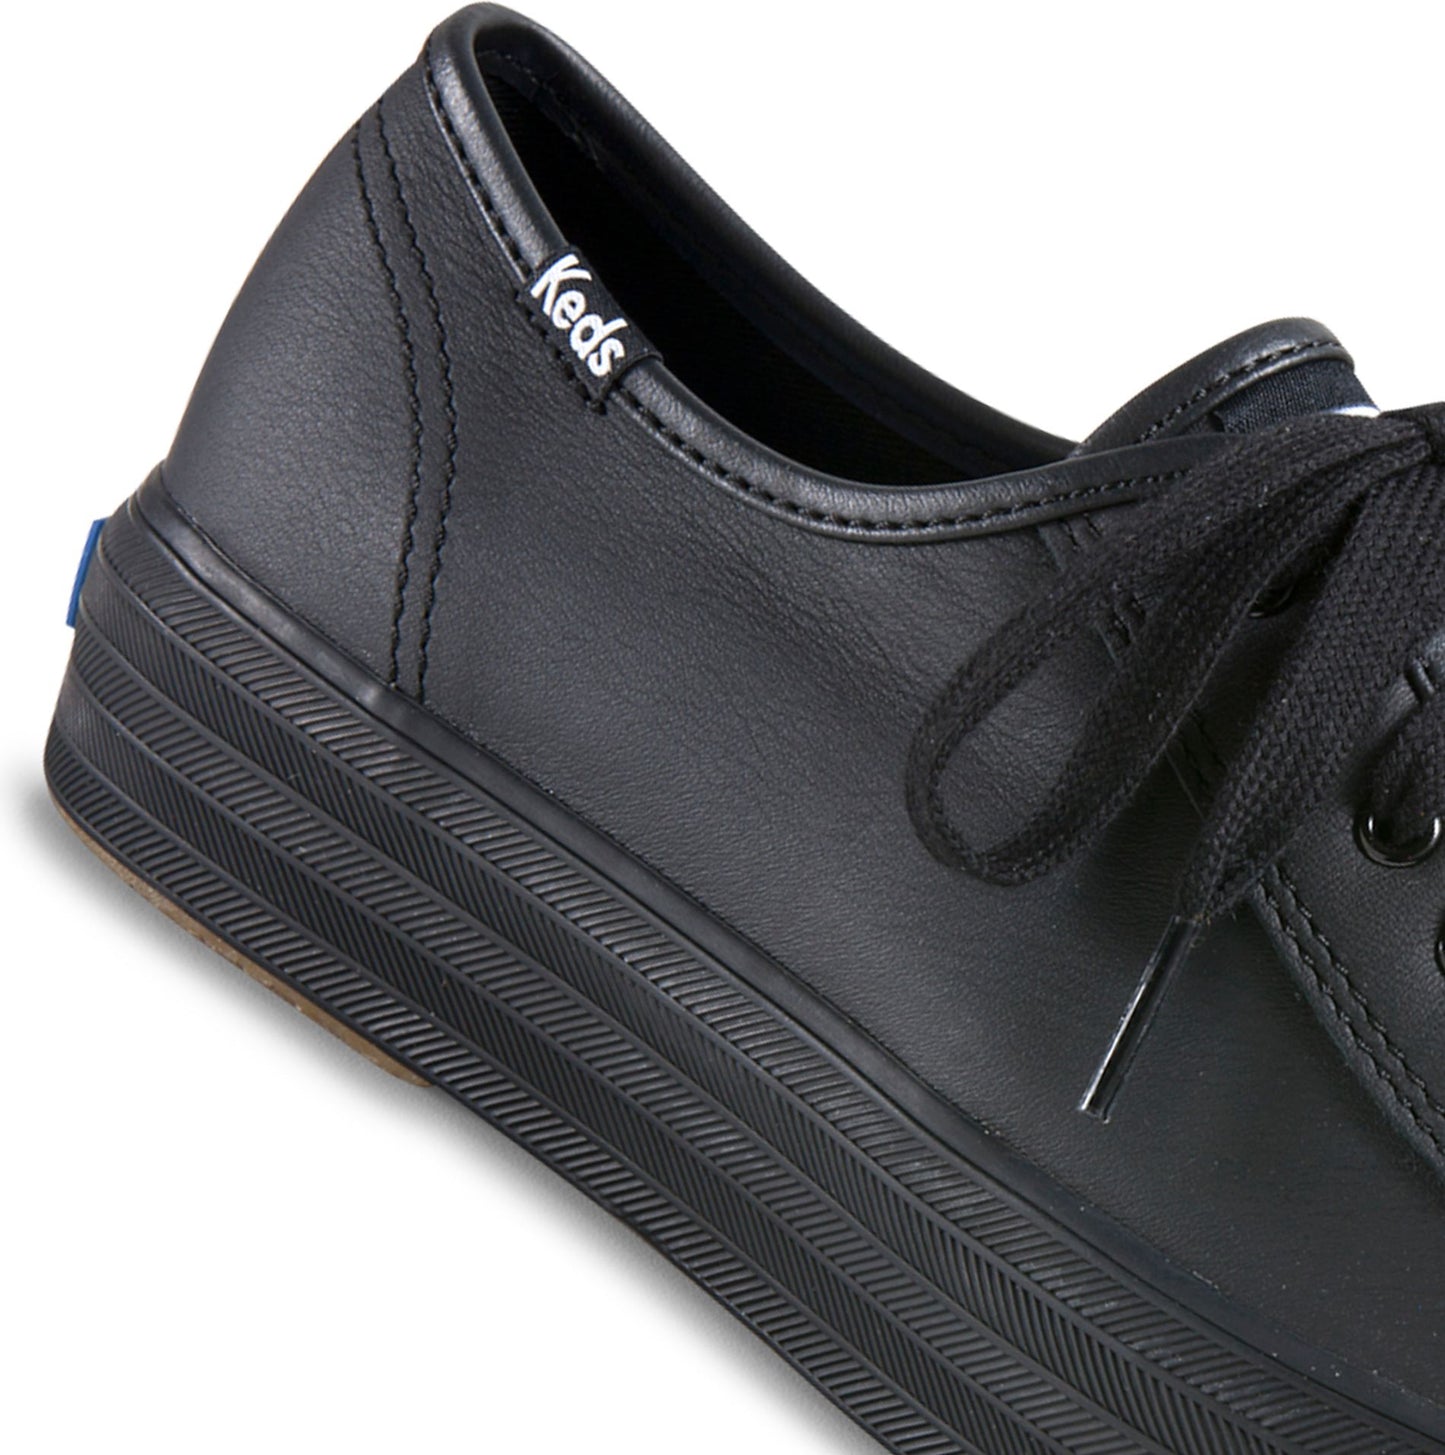 Keds Shoes Triple Kick Leather Black & Black